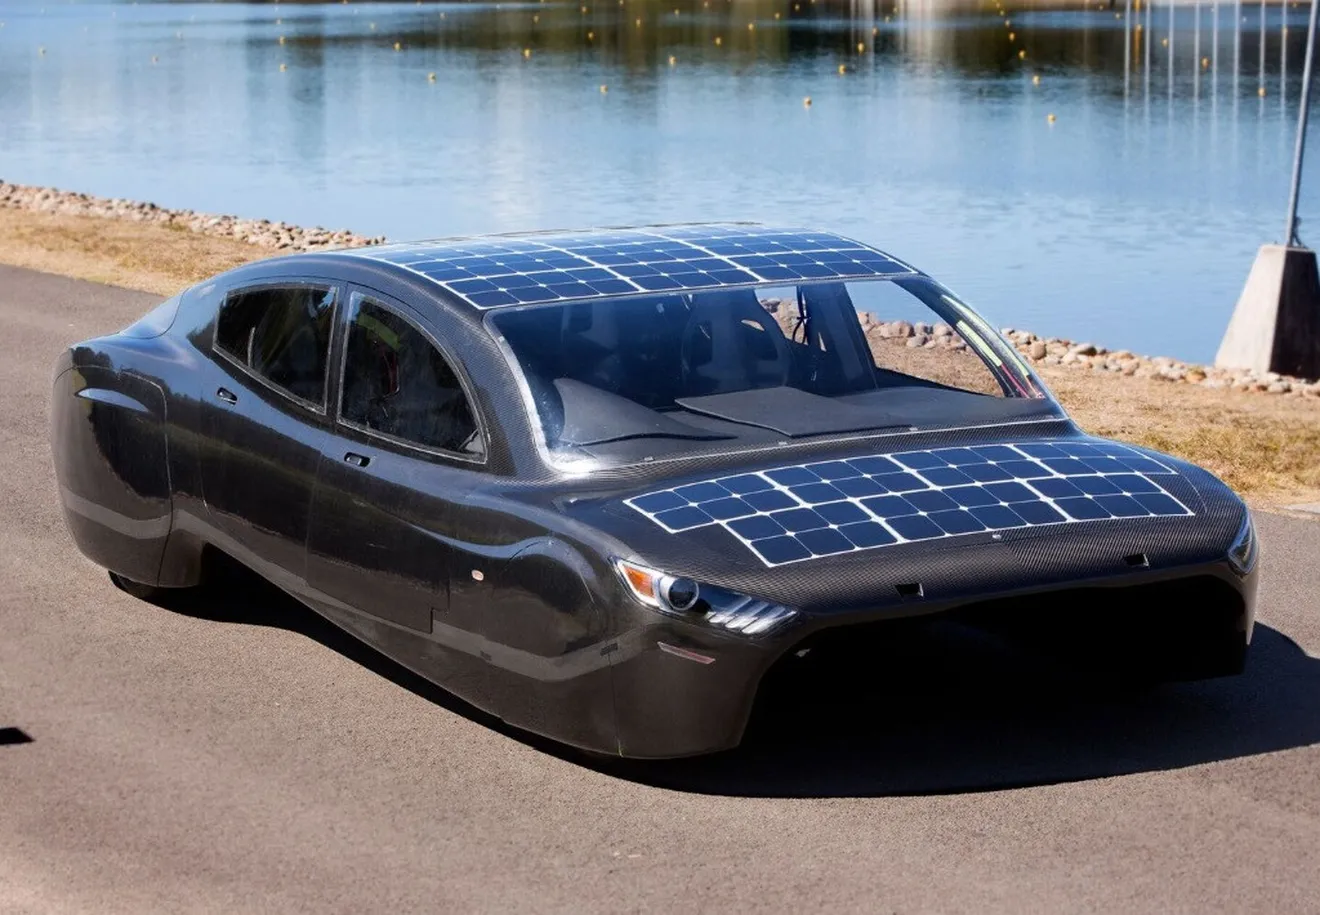 ¿Un Mustang de 4 puertas movido por energía solar?